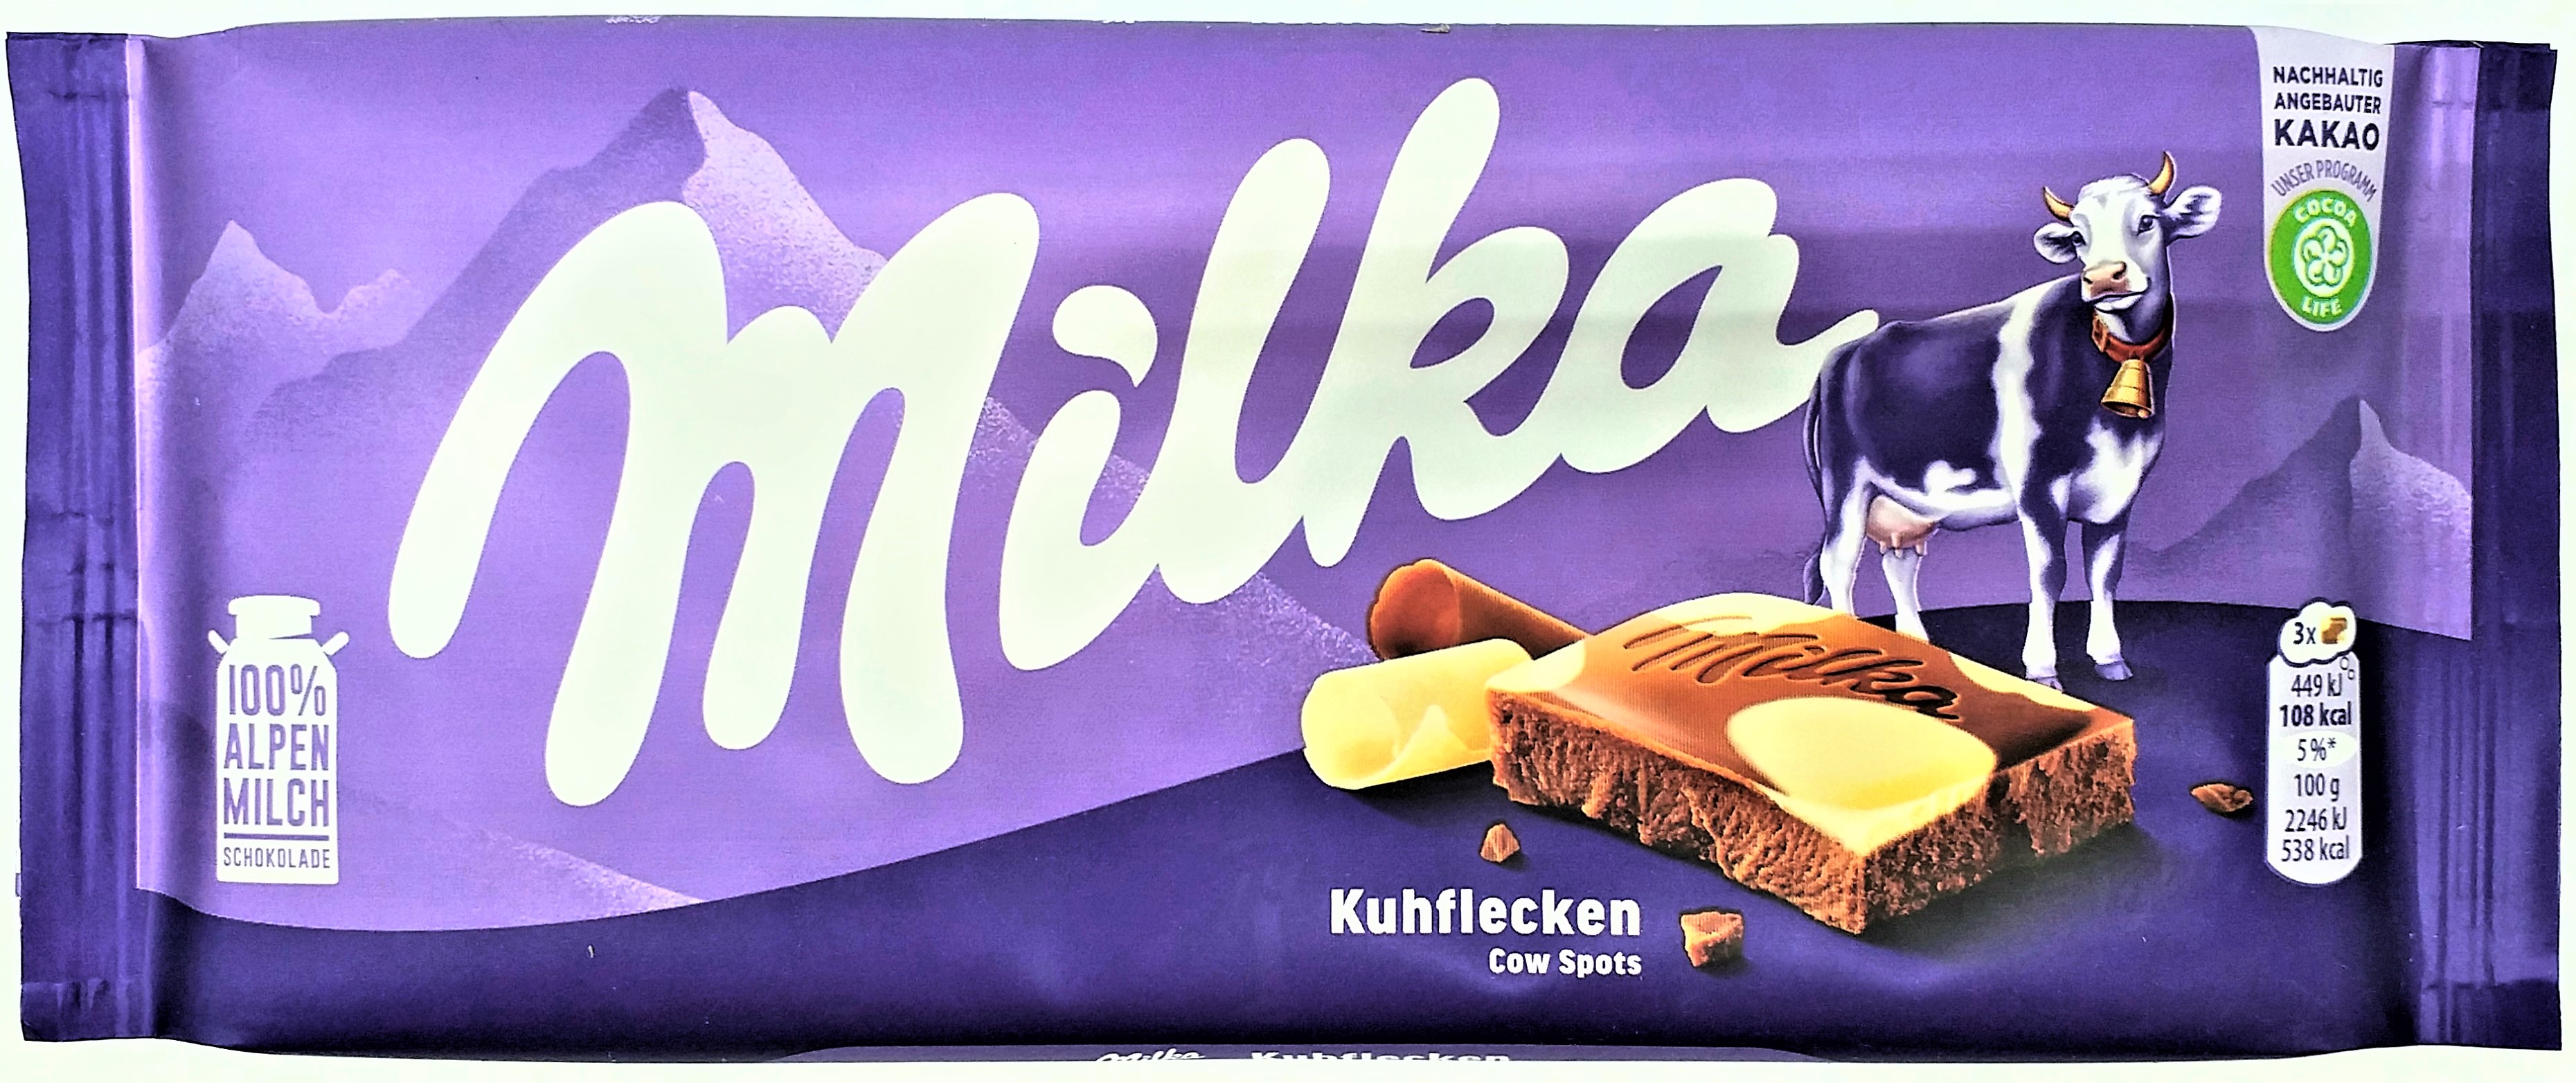 "Rettet mich" 6 Tafeln Milka Schokolade Kuhflecken je 100g